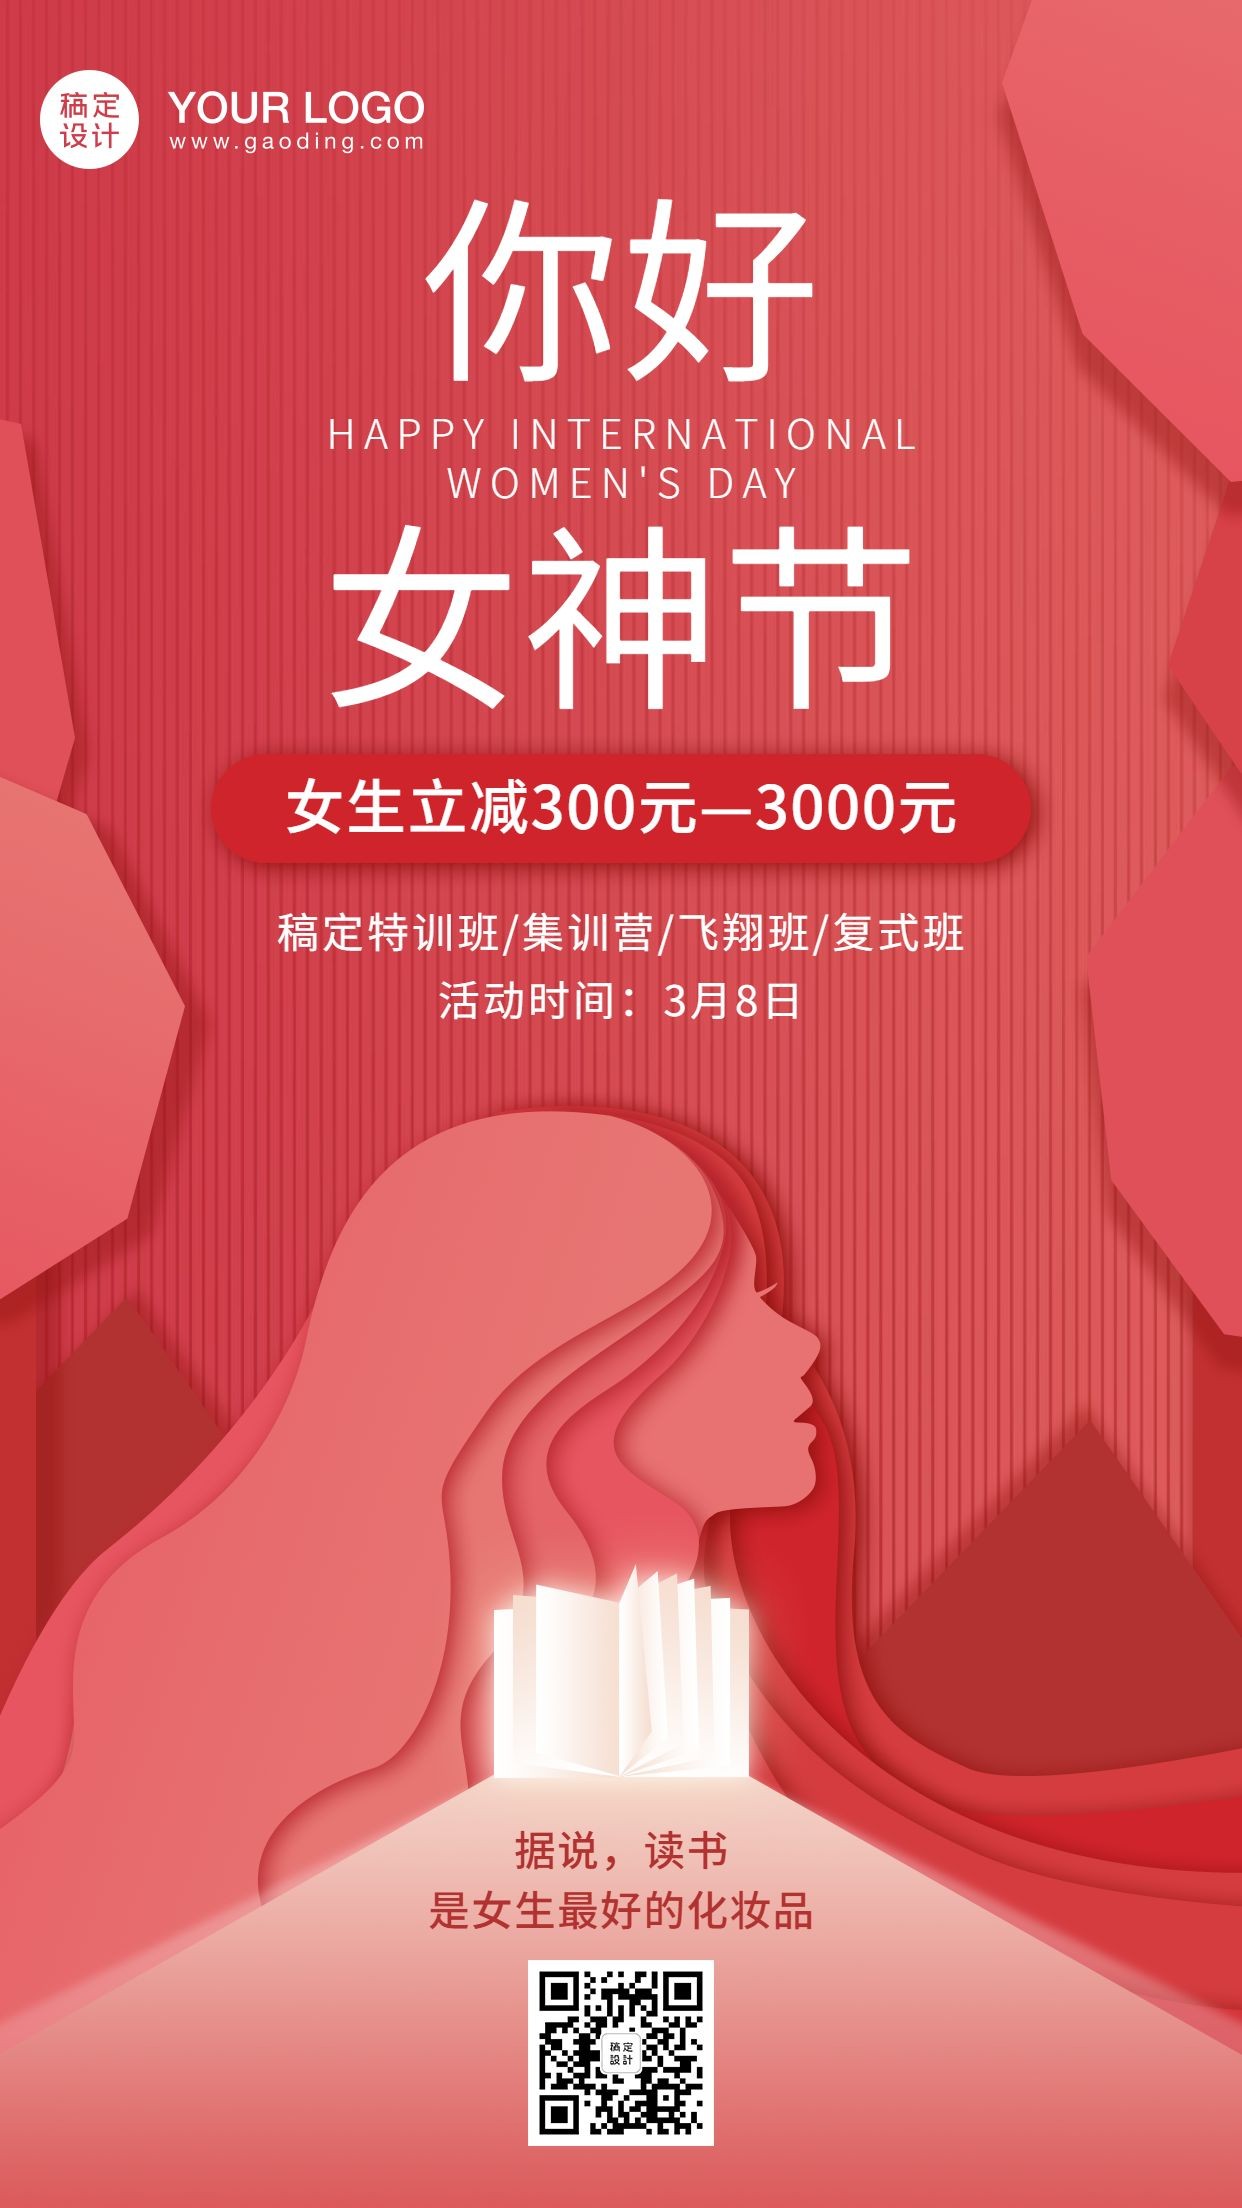 38妇女节女神节课程促销海报